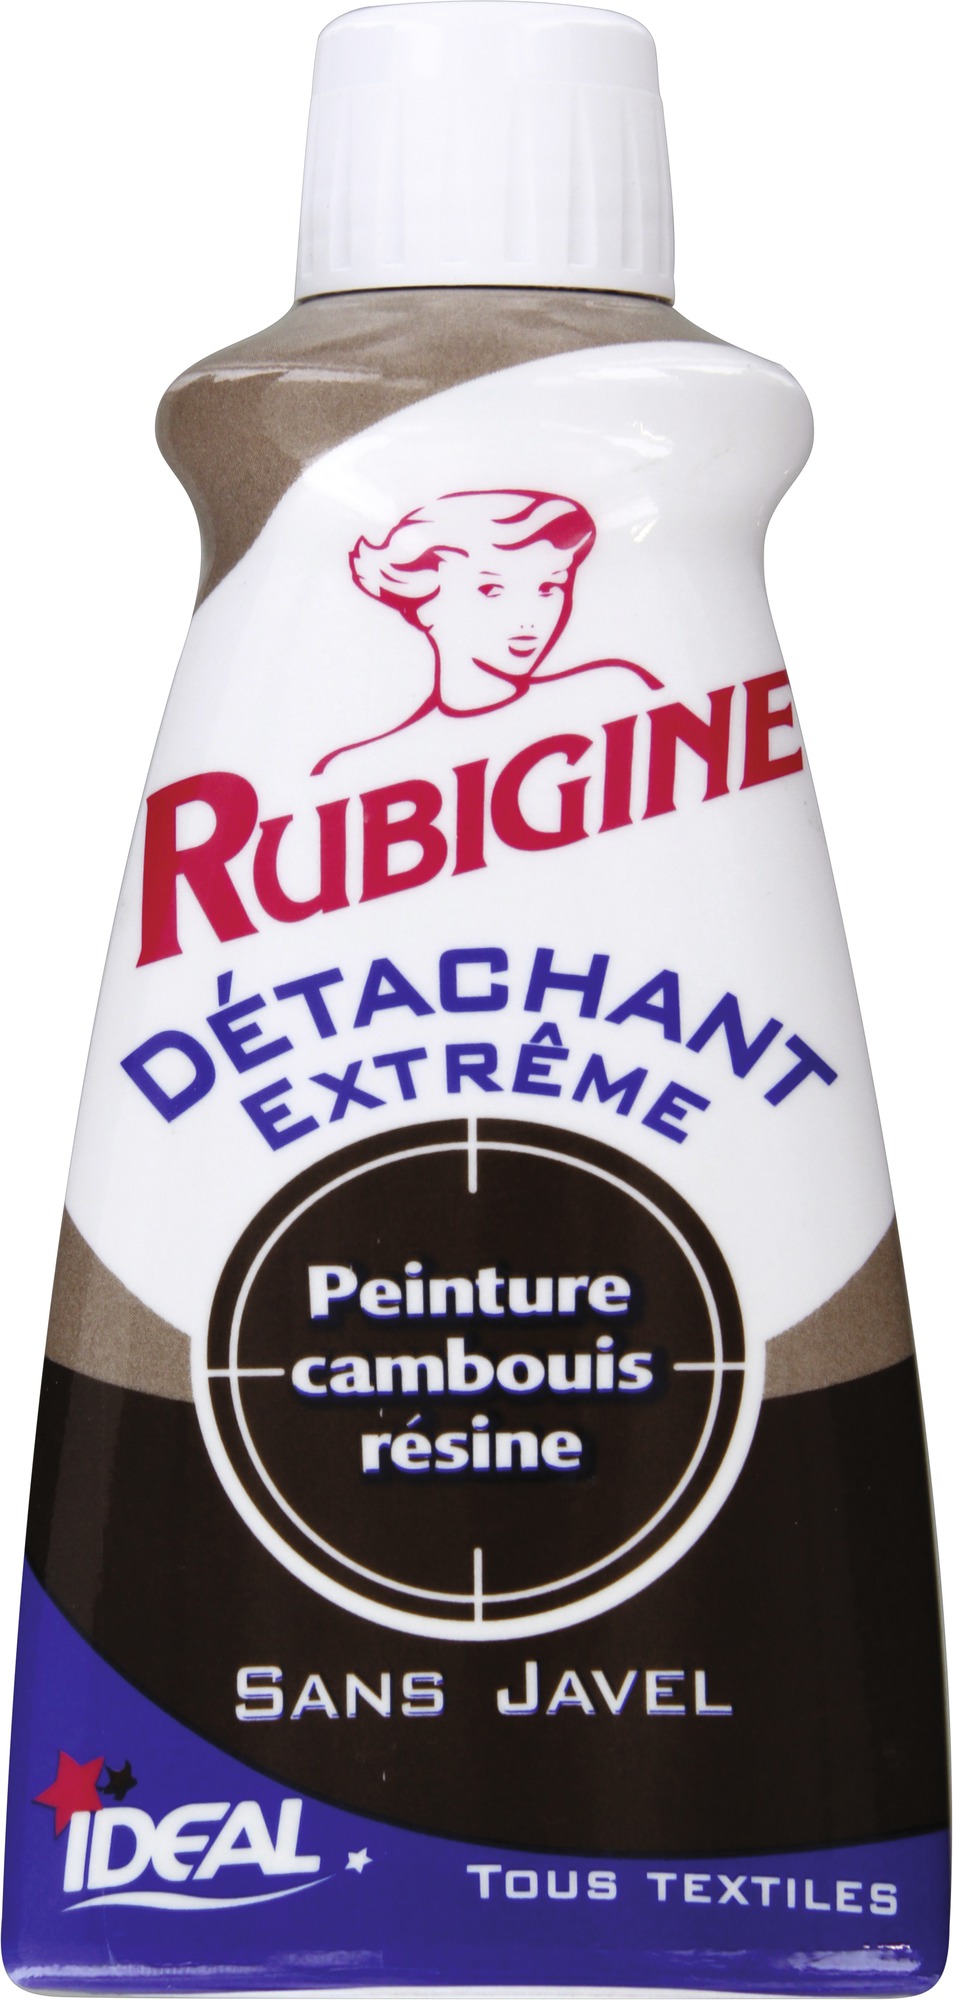 Détachant tâches organiques Rubigine - Flacon 100 ml - Peinture / Camboui / résine